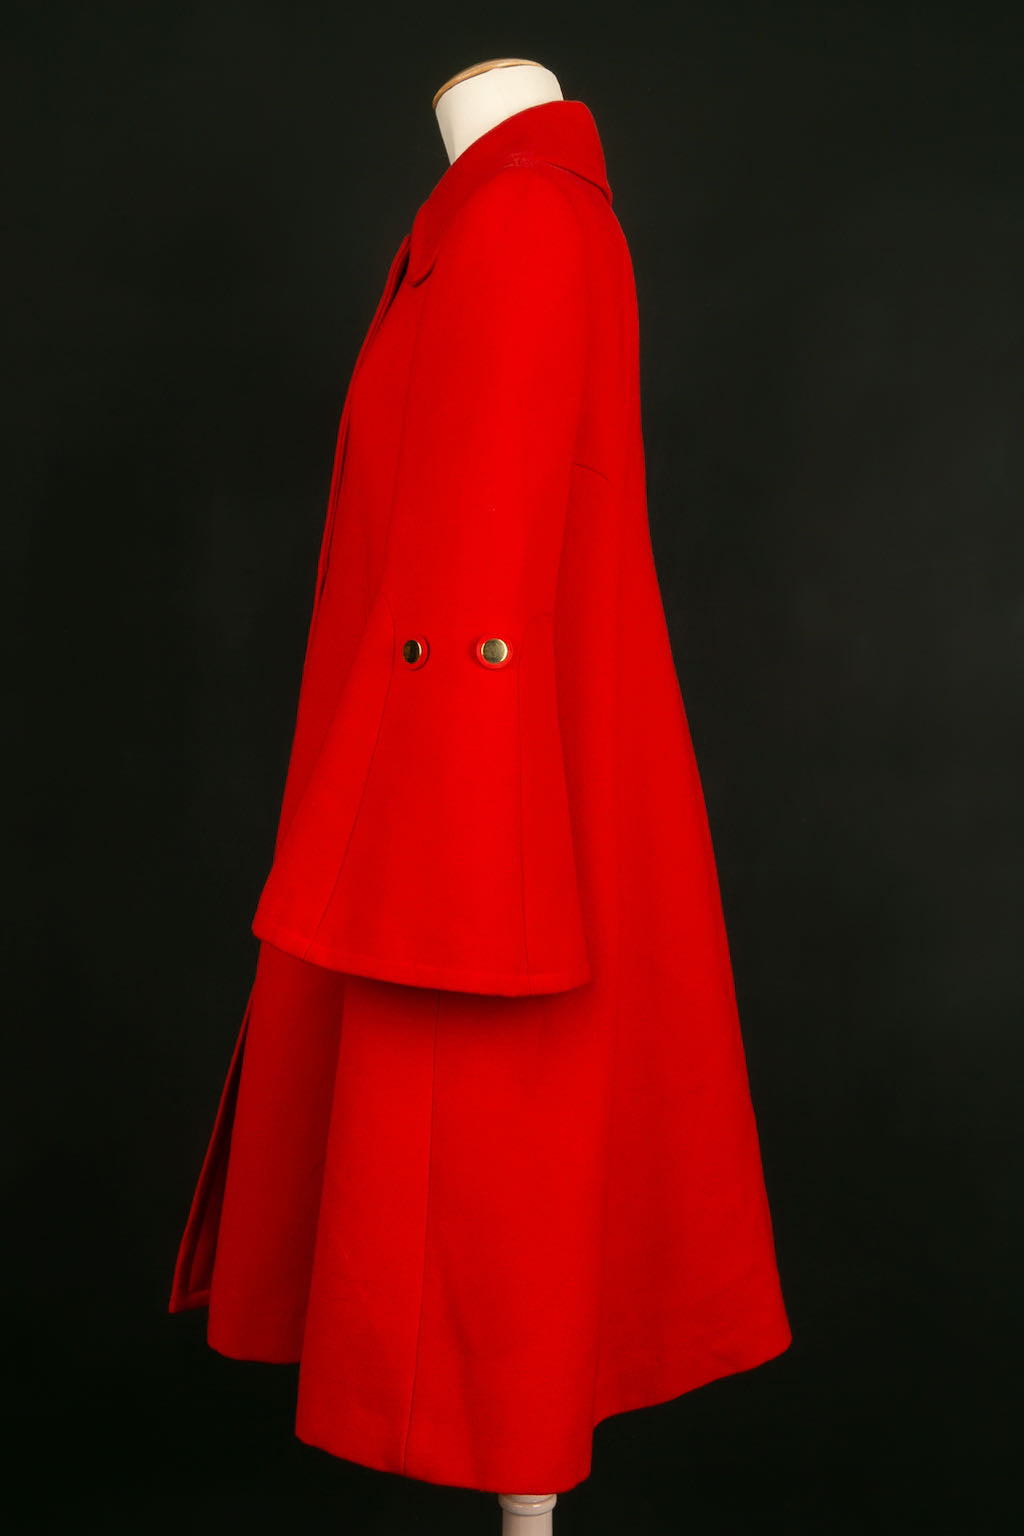 Manteau rouge 1960/70